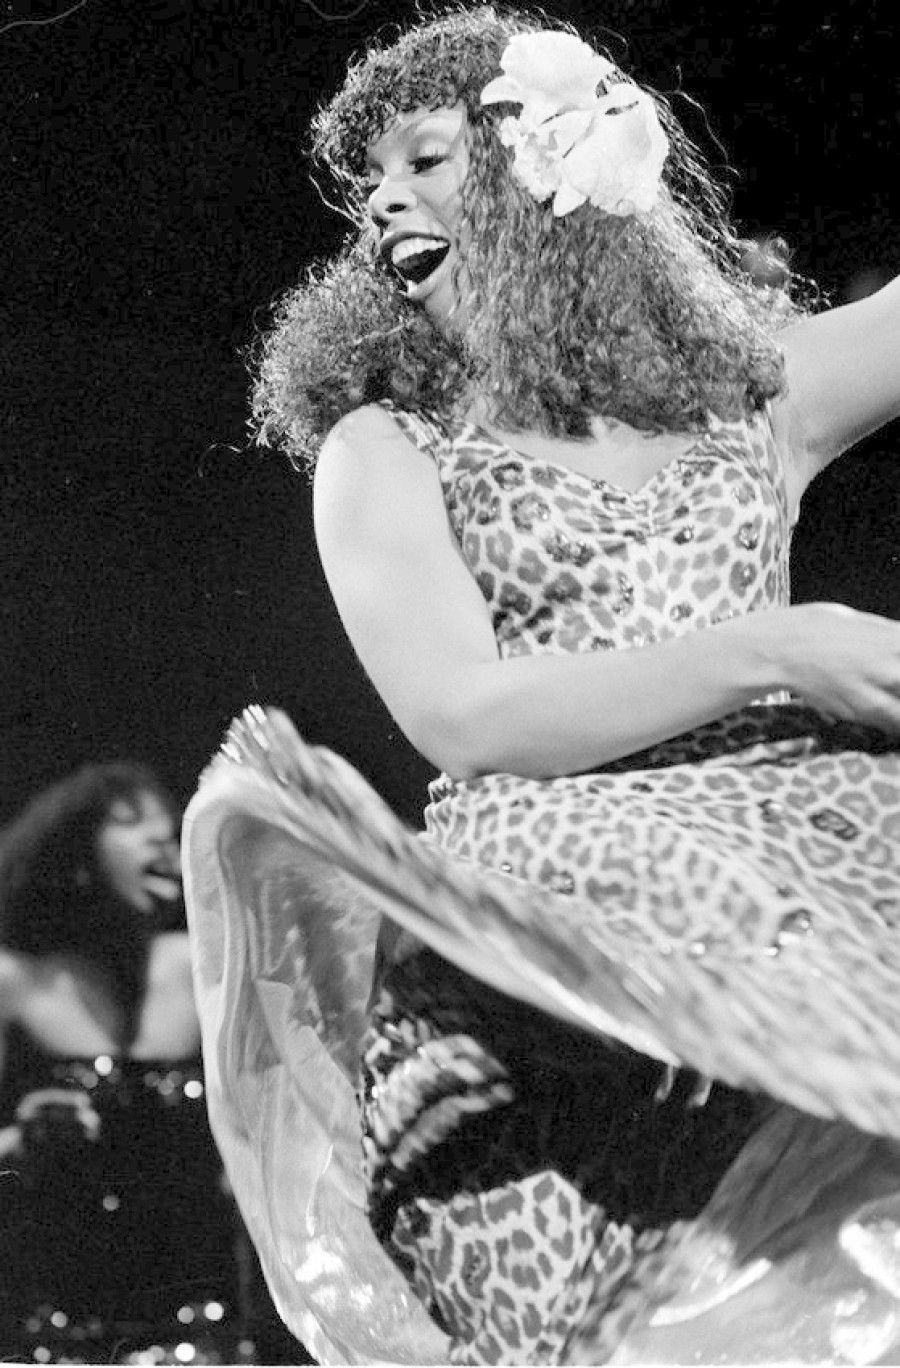 Disco Queen Donna Summer Dies At 63 Wbez Chicago